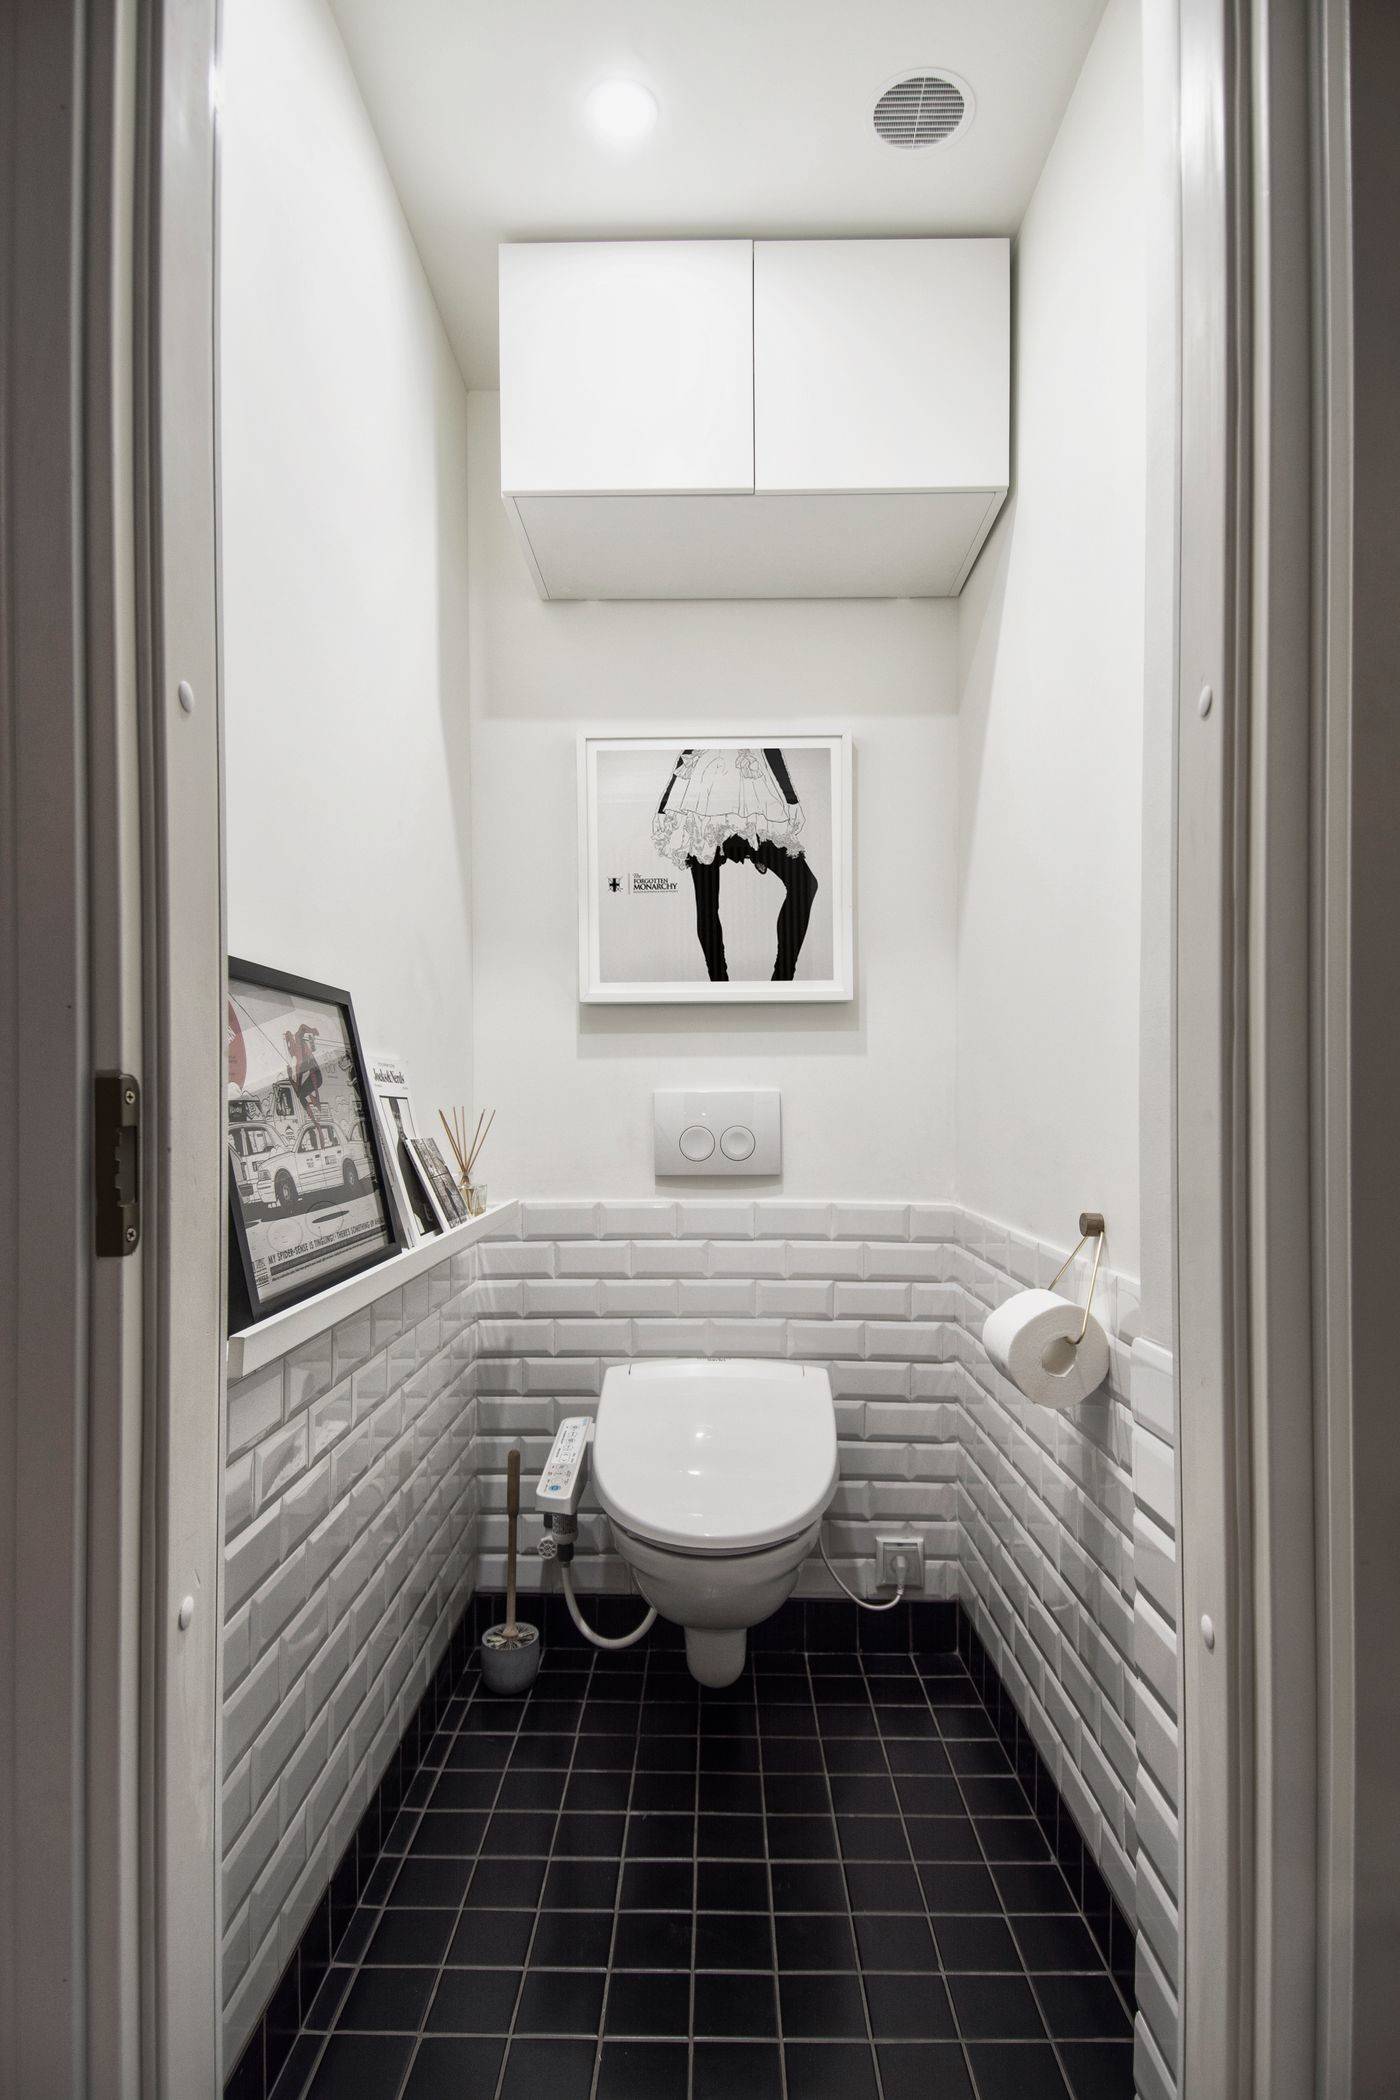 Дизайн маленького туалета в квартире. Идеи дизайна туалета маленького размера с фото